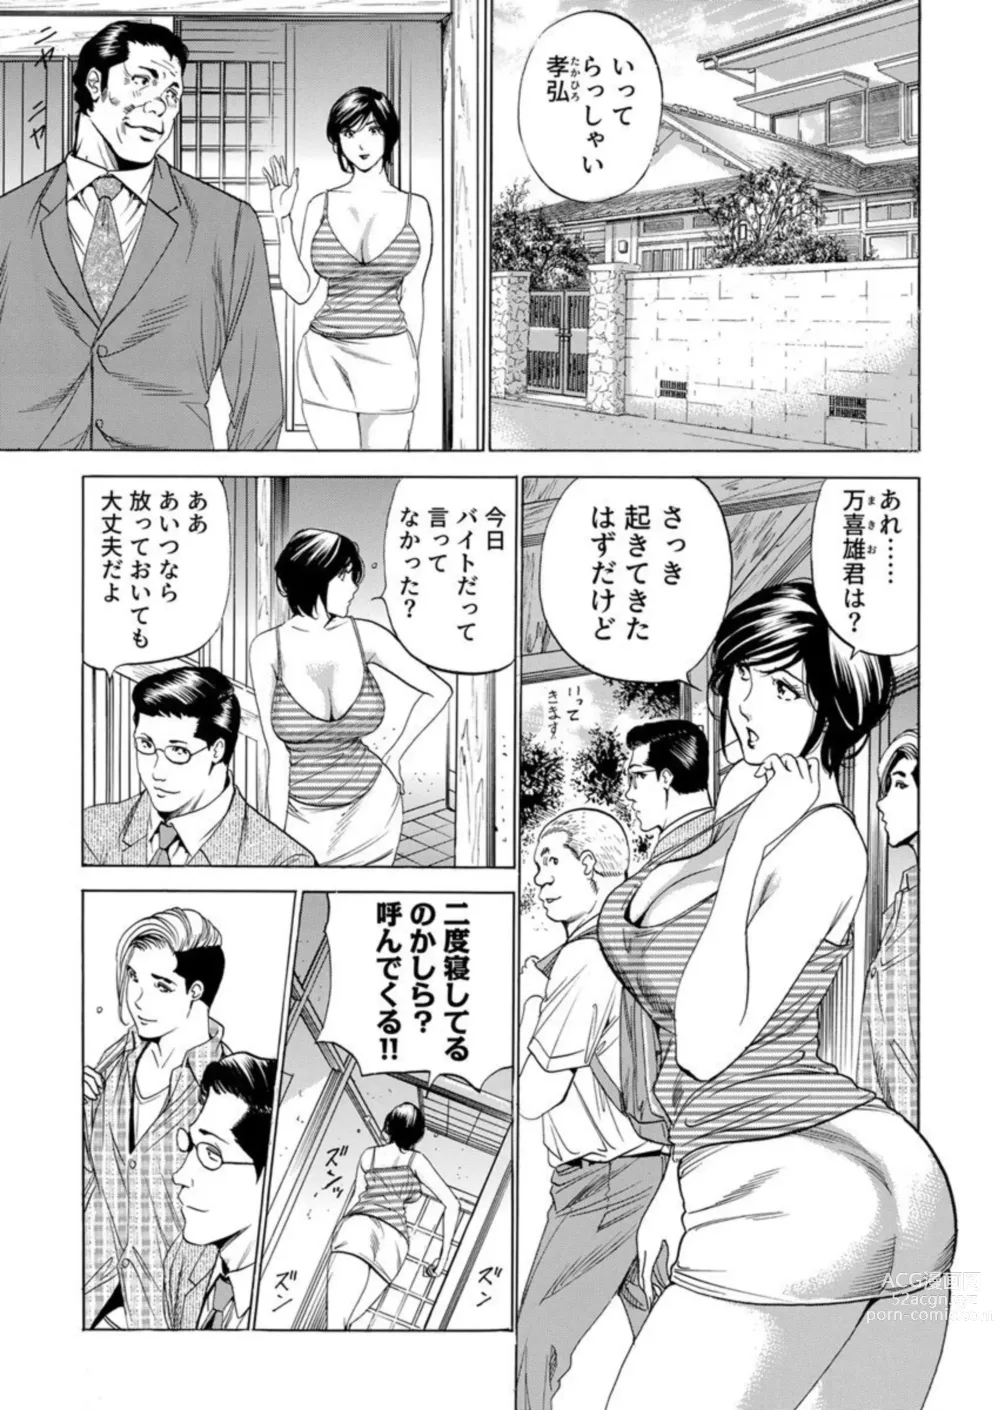 Page 3 of manga Totsugisaki wa Tsureko ga 9 nin!? Gibo, Musukotachi to no sei Kankei ni Nayamu 2